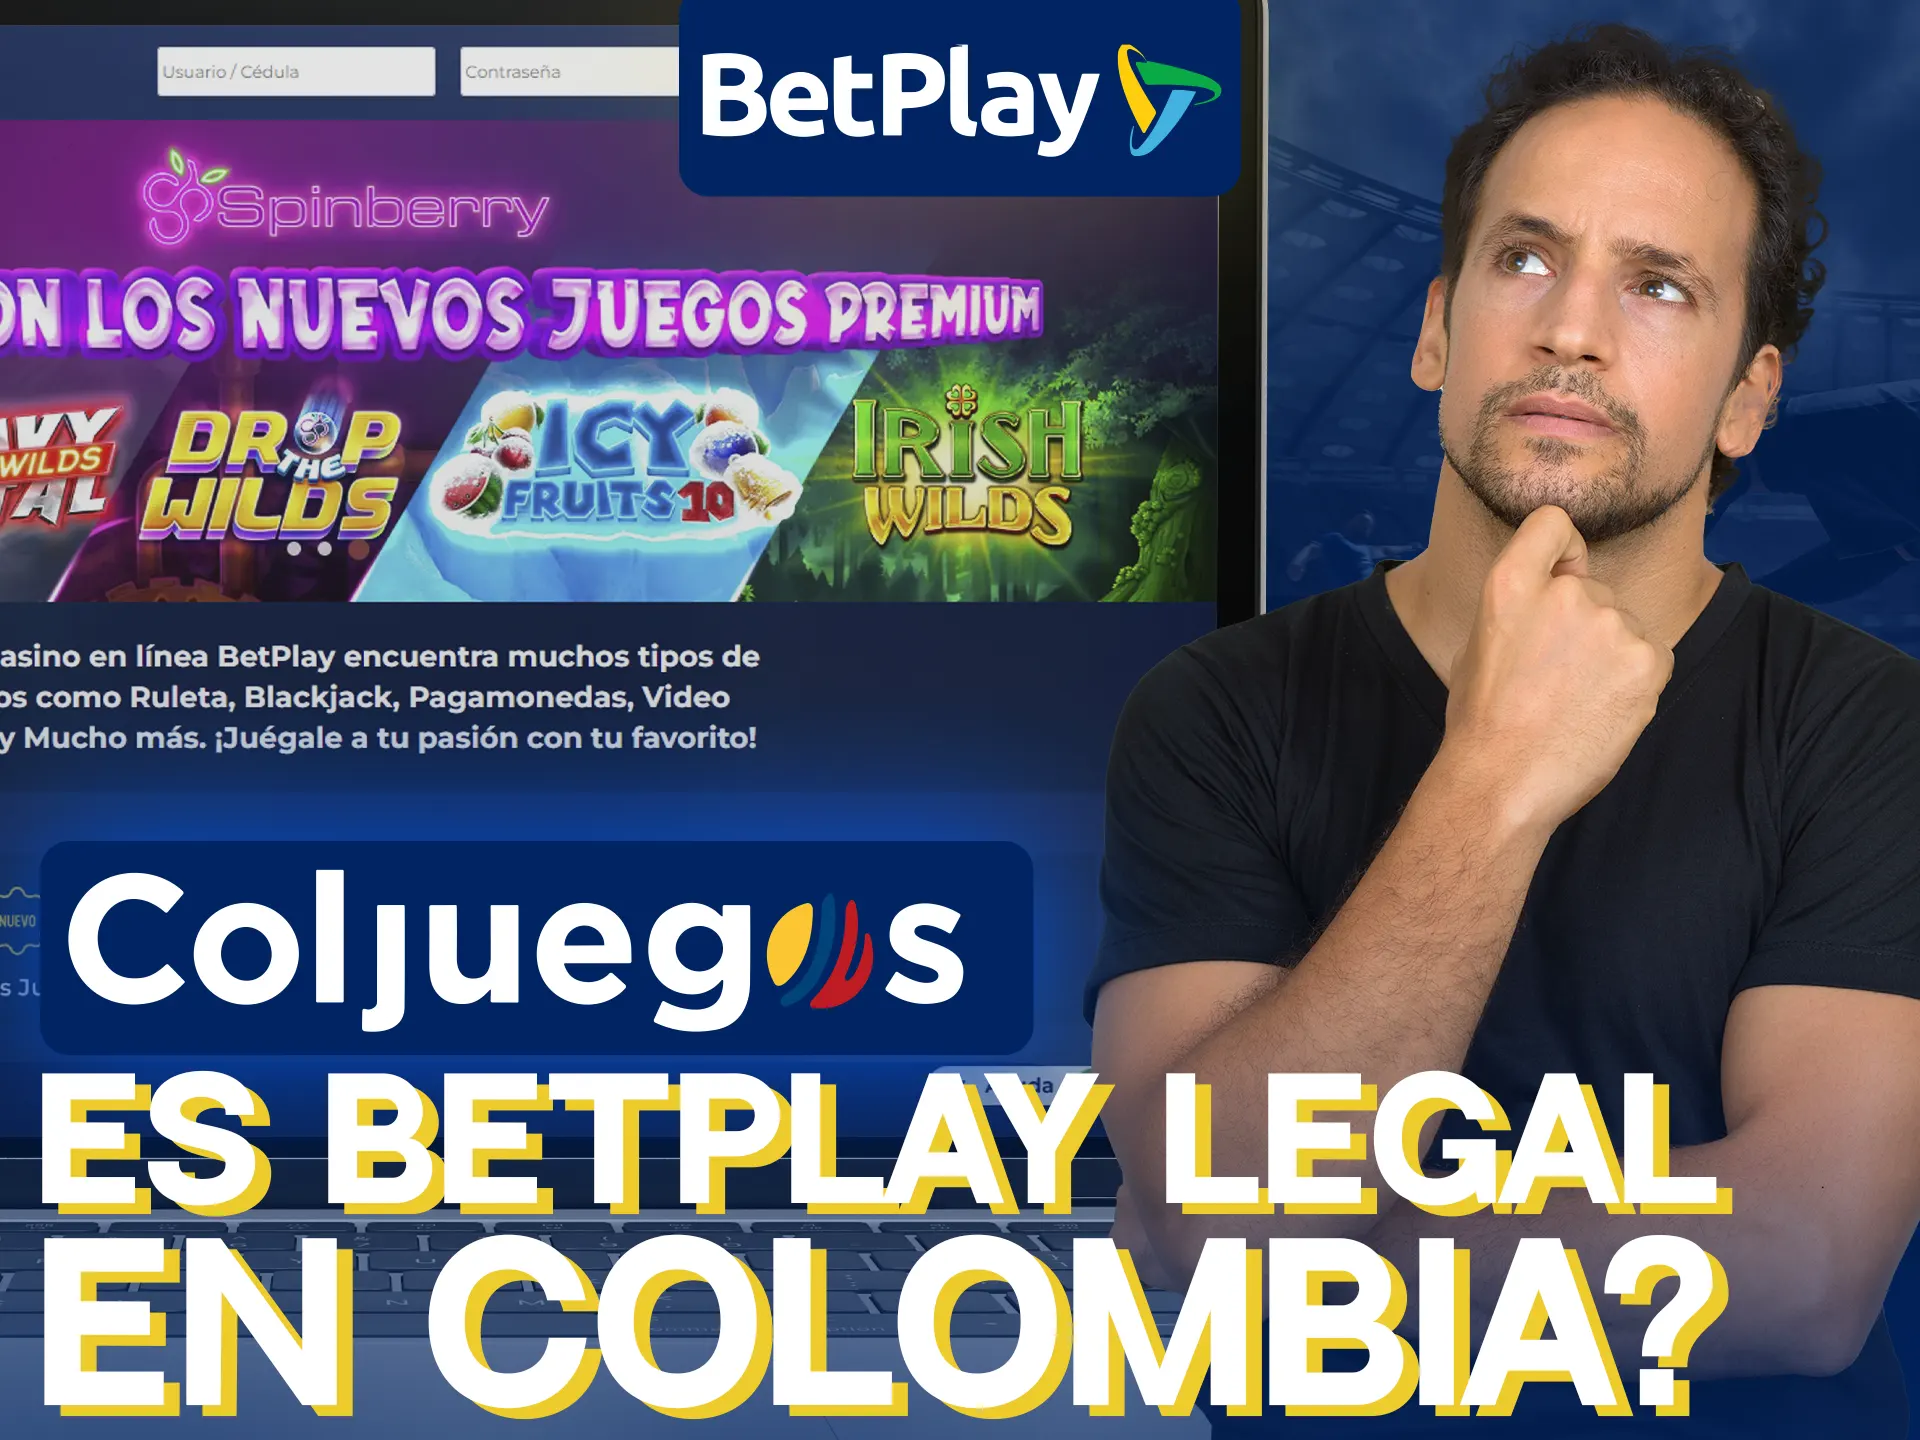 BetPlay es totalmente legal en Colombia.